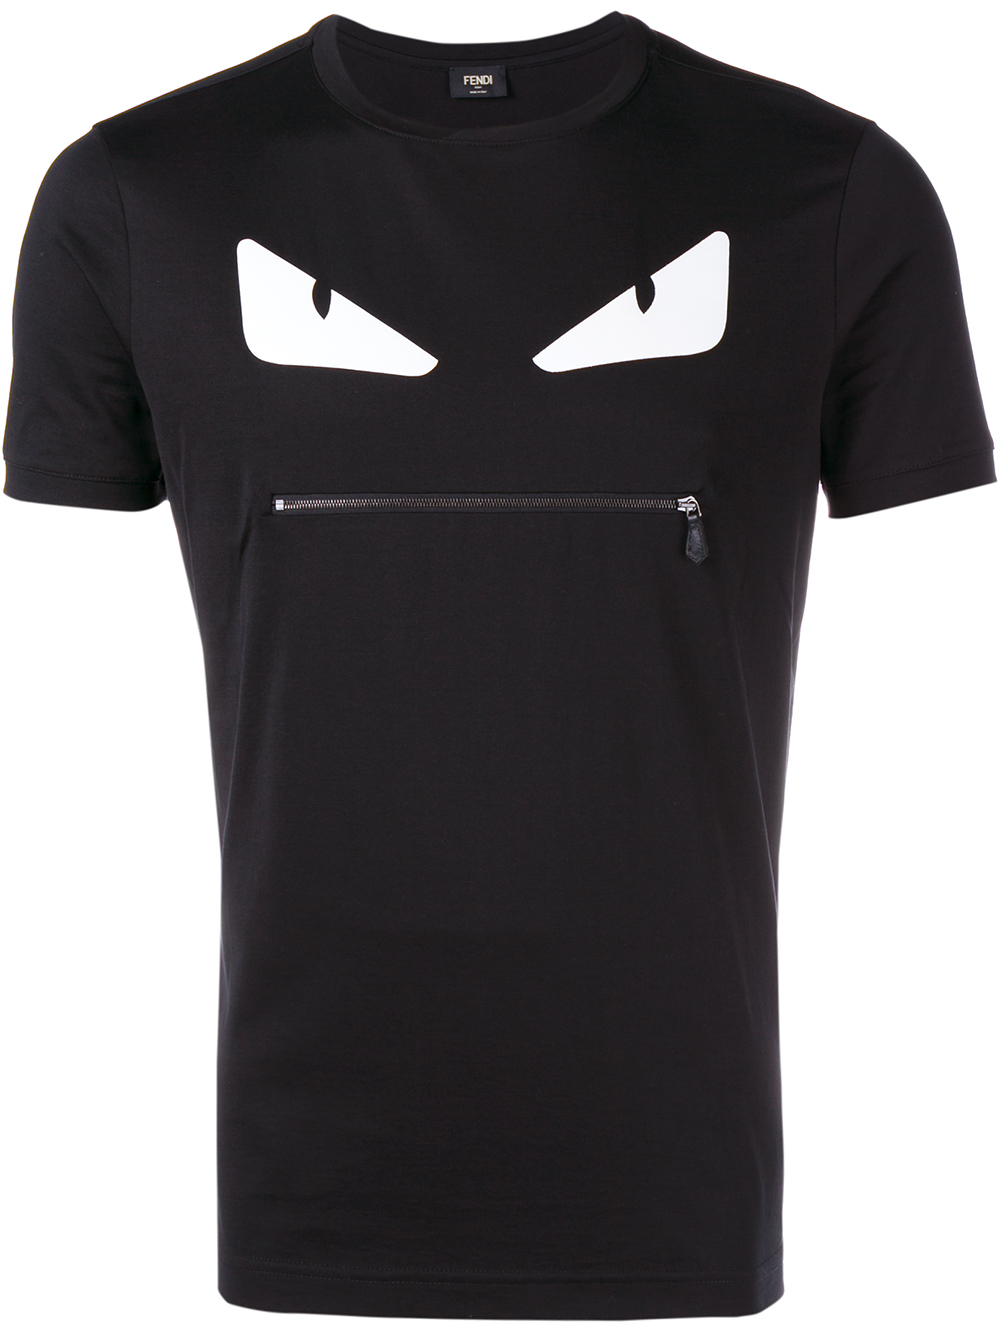 Fendi Monster T-shirt in Black for Men - Lyst